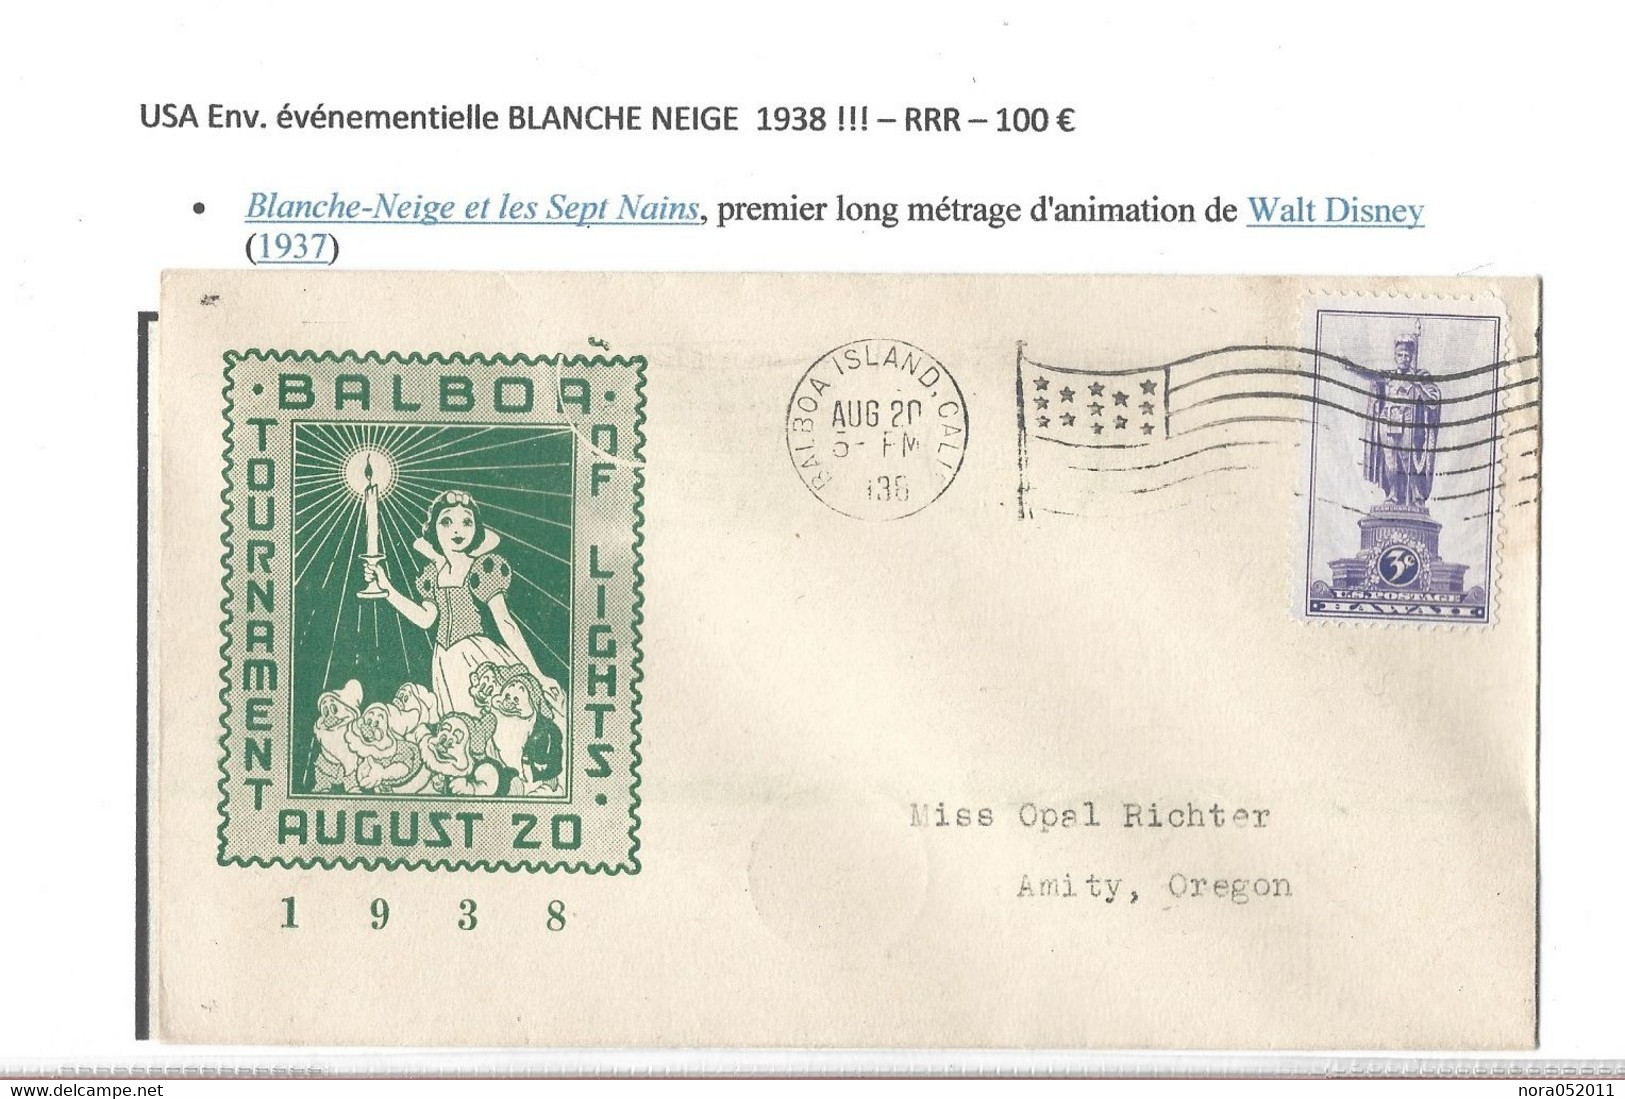 USA  Enveloppe évènementielle BLANCHE NEIGE 1938 - Event Covers